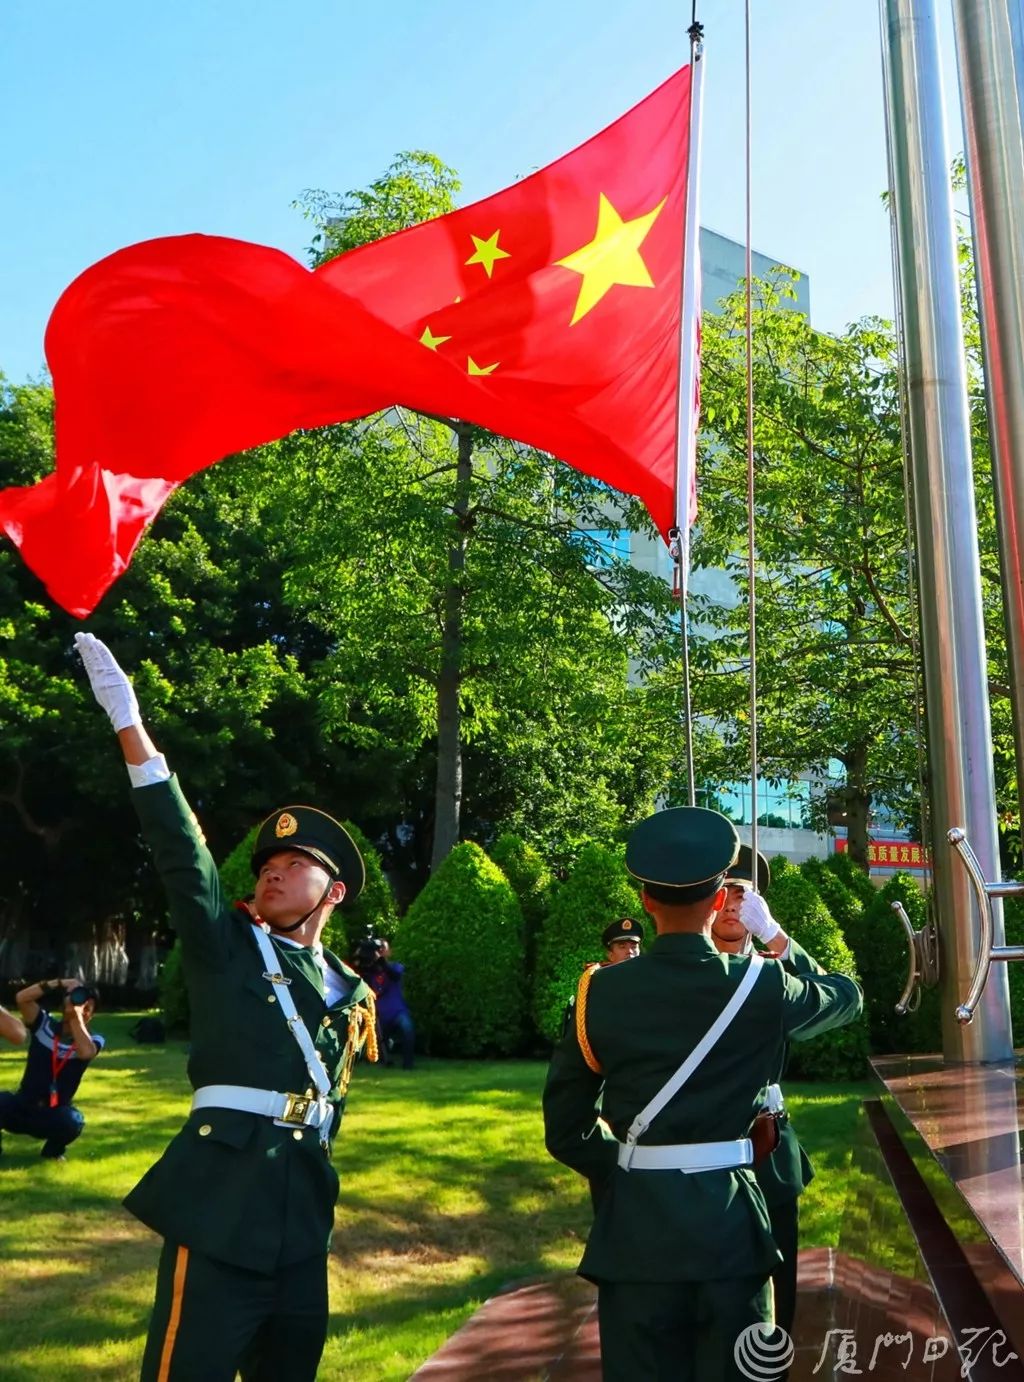 【壮丽70年】今天,厦门这样庆祝新中国成立70周年!